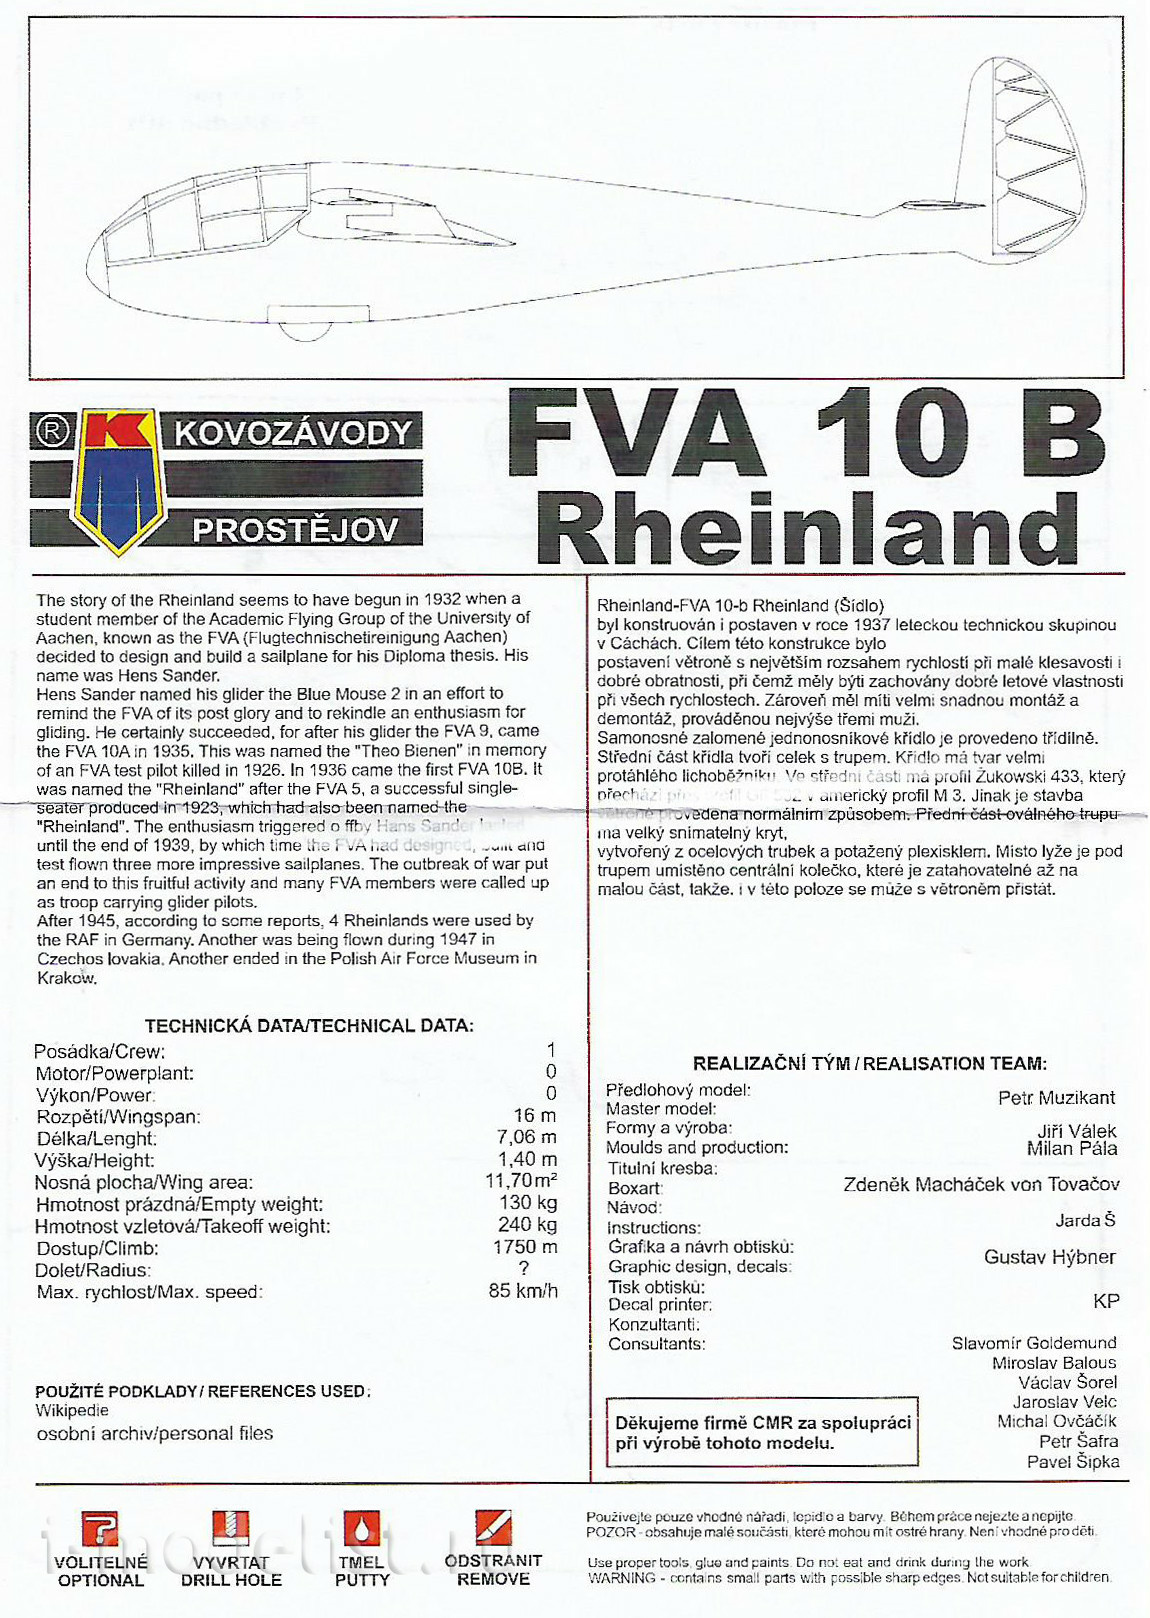 KPM0154 Kovozavody Prostejov 1/72 FVA-10b Rheinland (Šídlo)